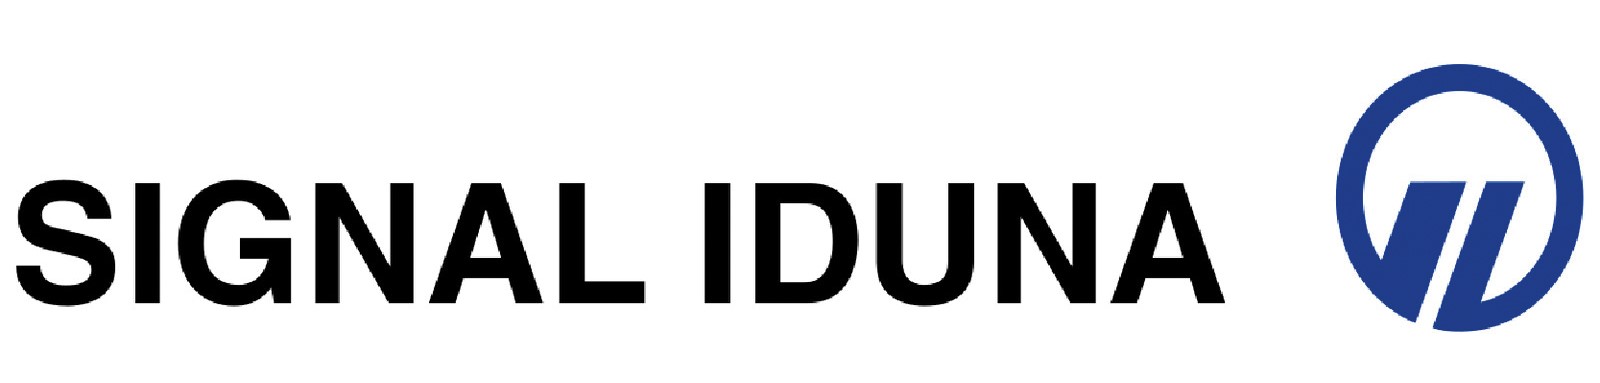 Logo SIGNAL IDUNA der SIGNAL IDUNA Gruppe